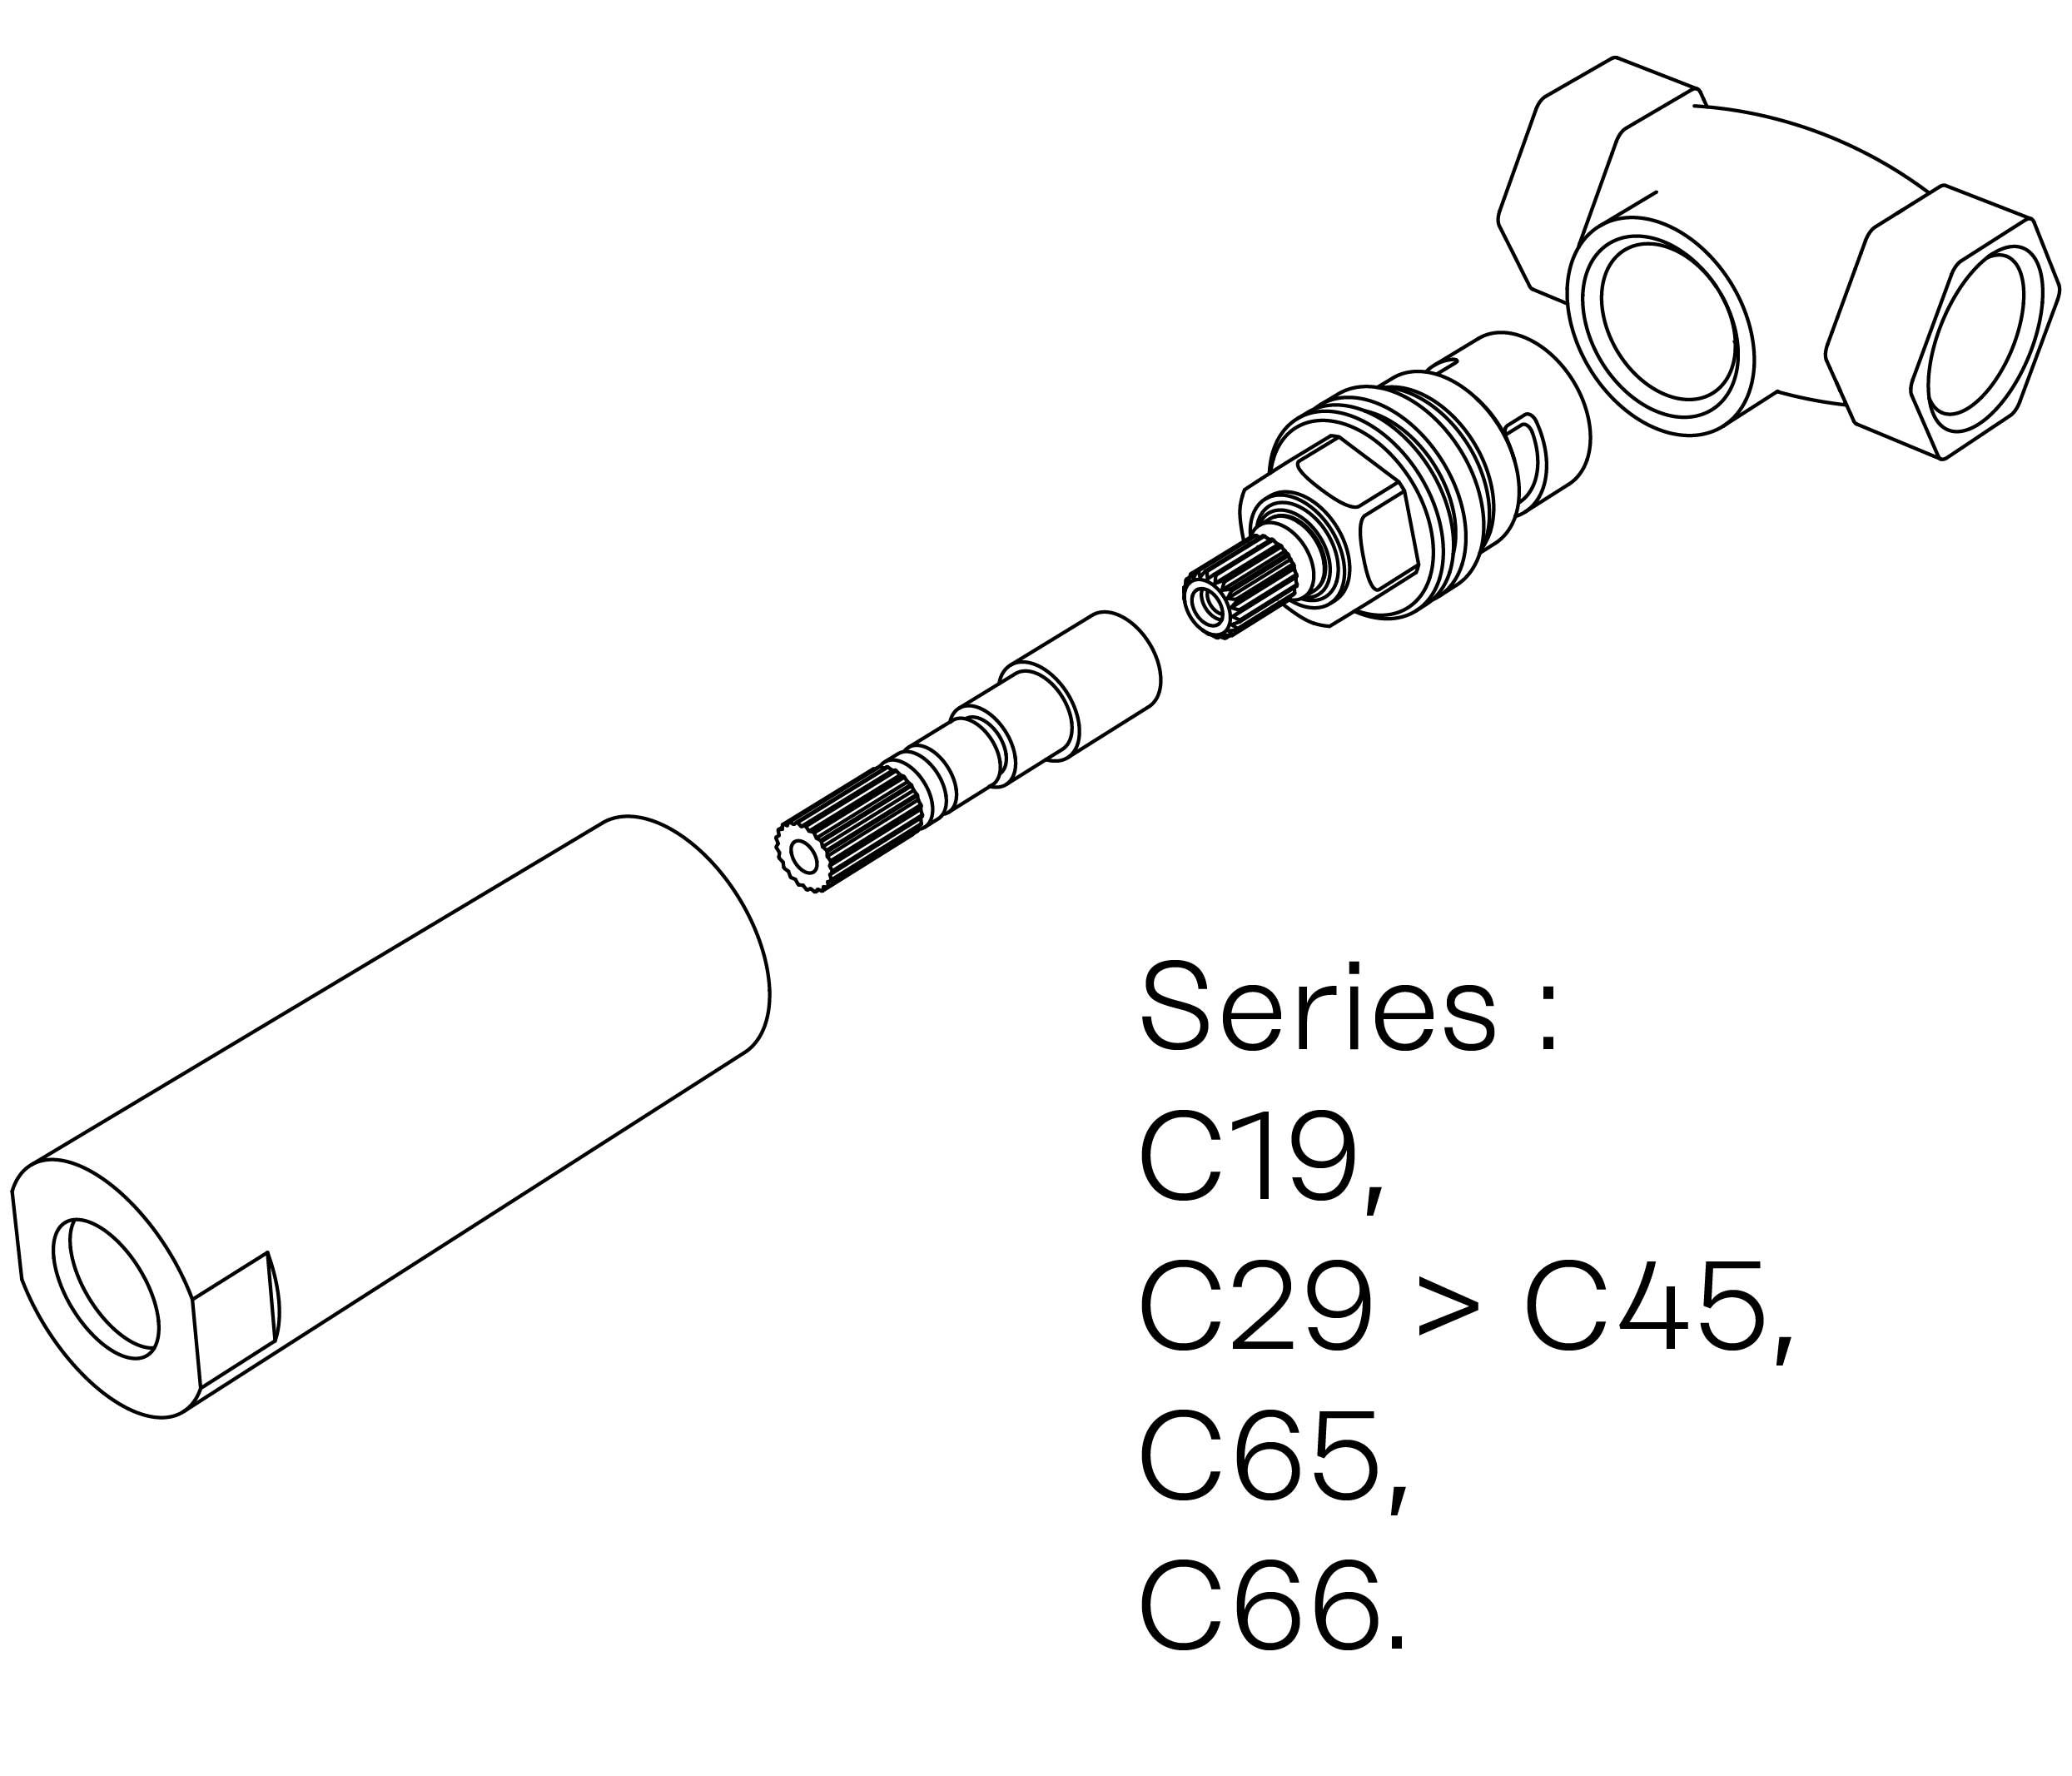 C00-23K29H Kit #3 for W-M valve 3/4″, 1/4 turn, Left